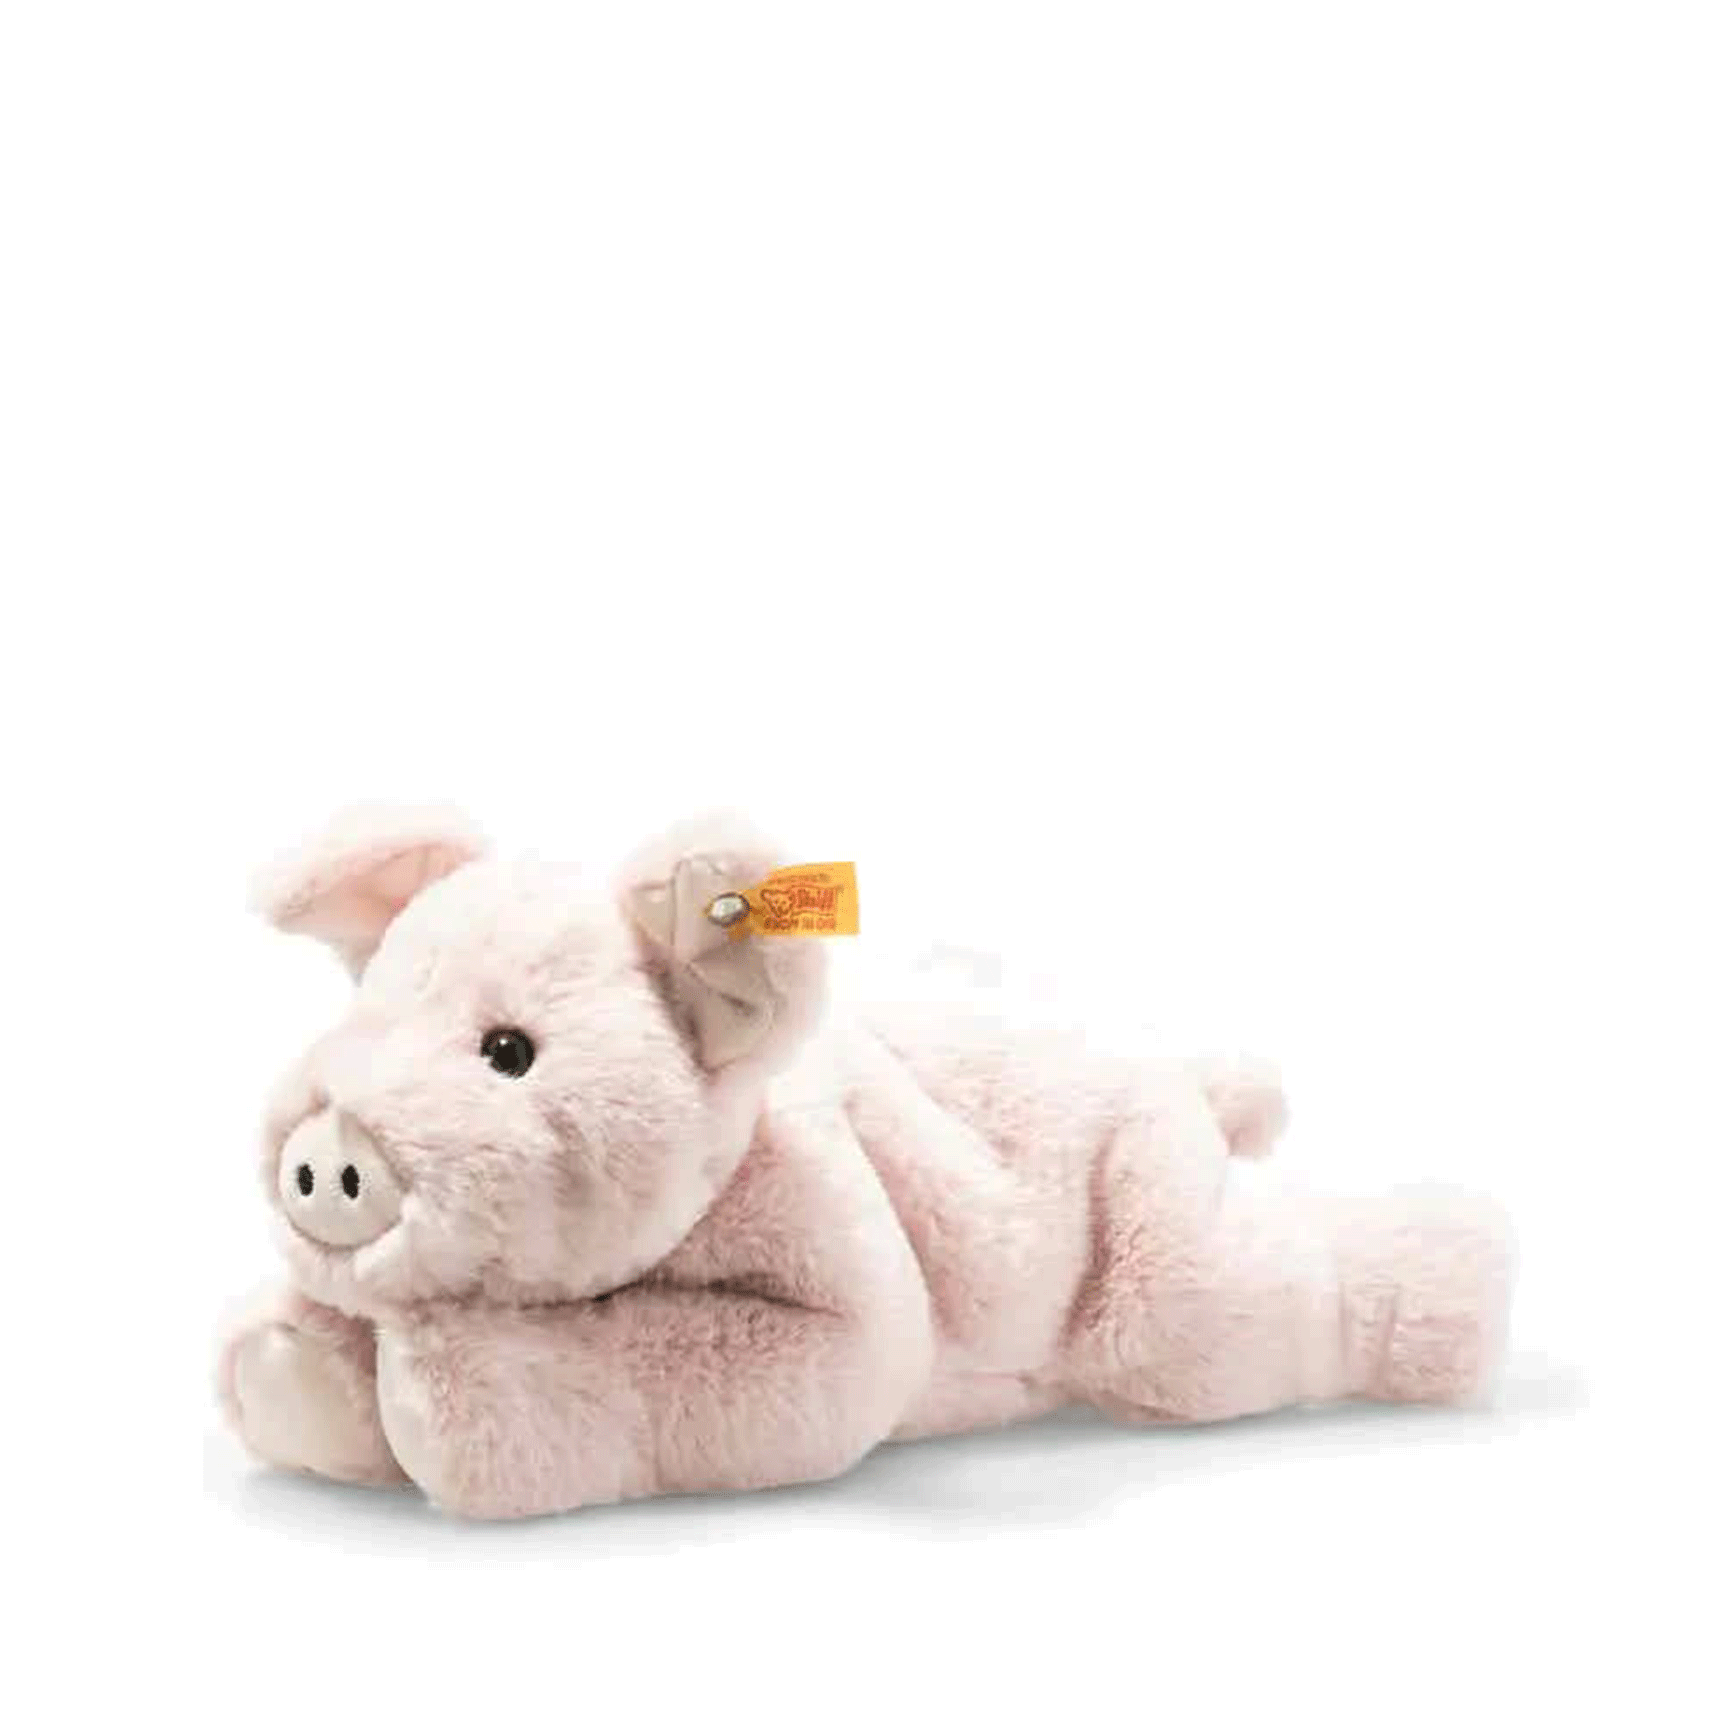 Steiff teddy bears Steiff Piko Pig 63978